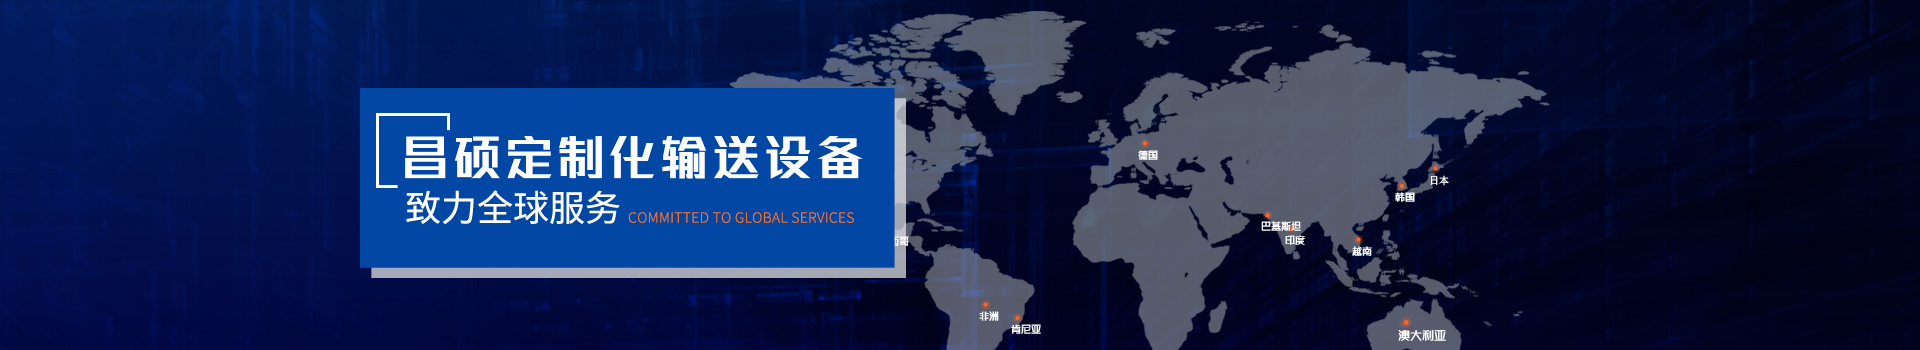 澳门新葡平台网址8883定制化输送设备  致力全球服务